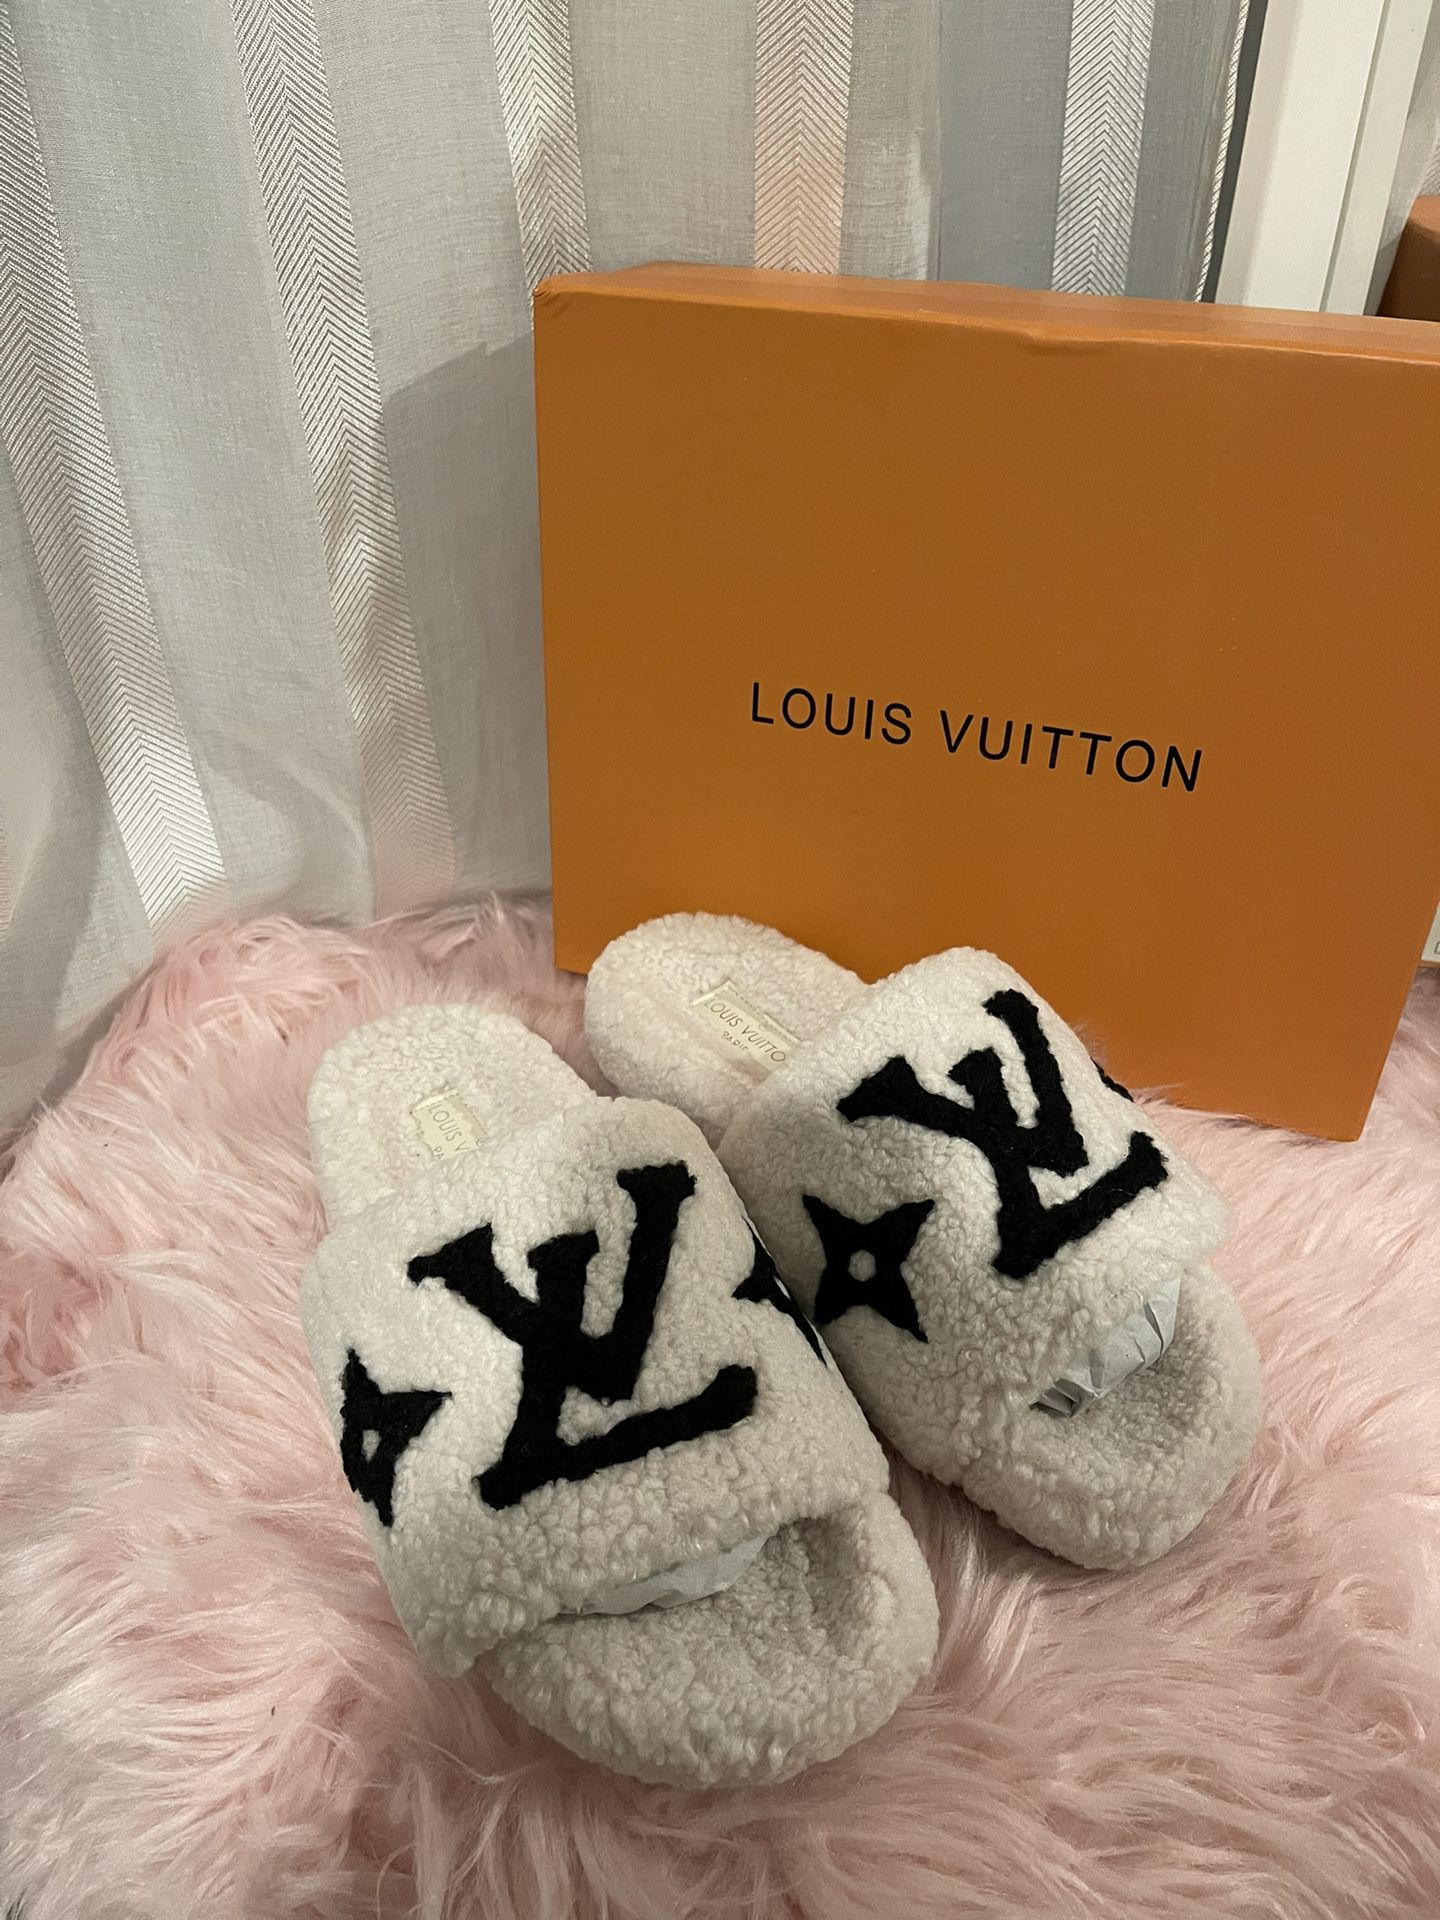 Louis Vuitton HOCKENHEIM MOCCASIN for Sale in Anaheim, CA - OfferUp